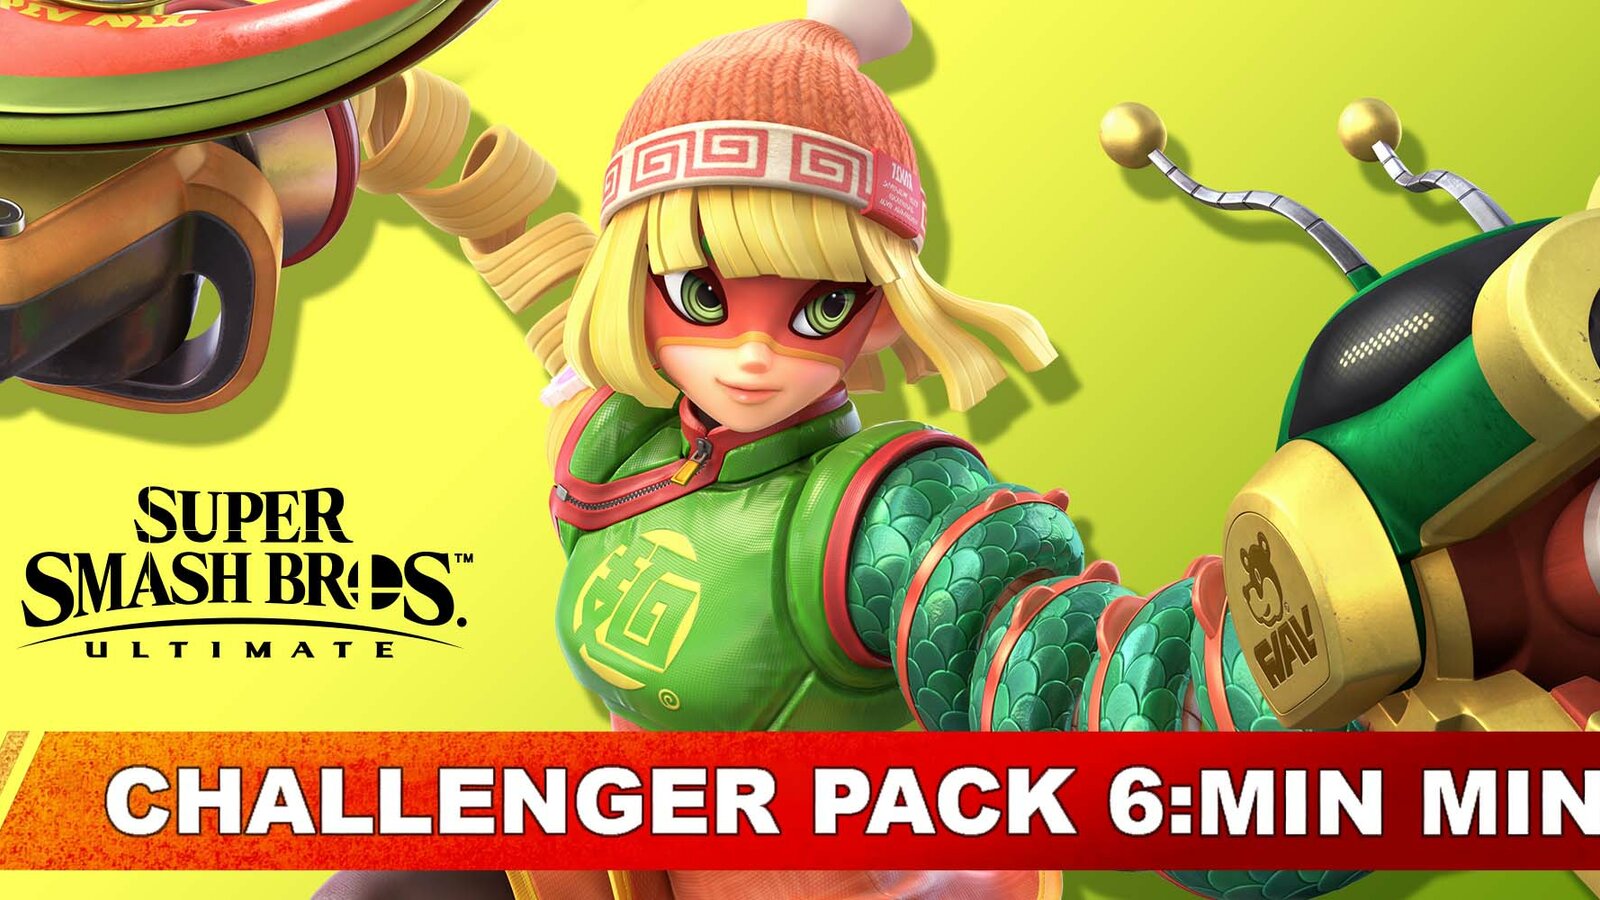 Super Smash Bros. Ultimate - Challenger Pack 6: Min Min